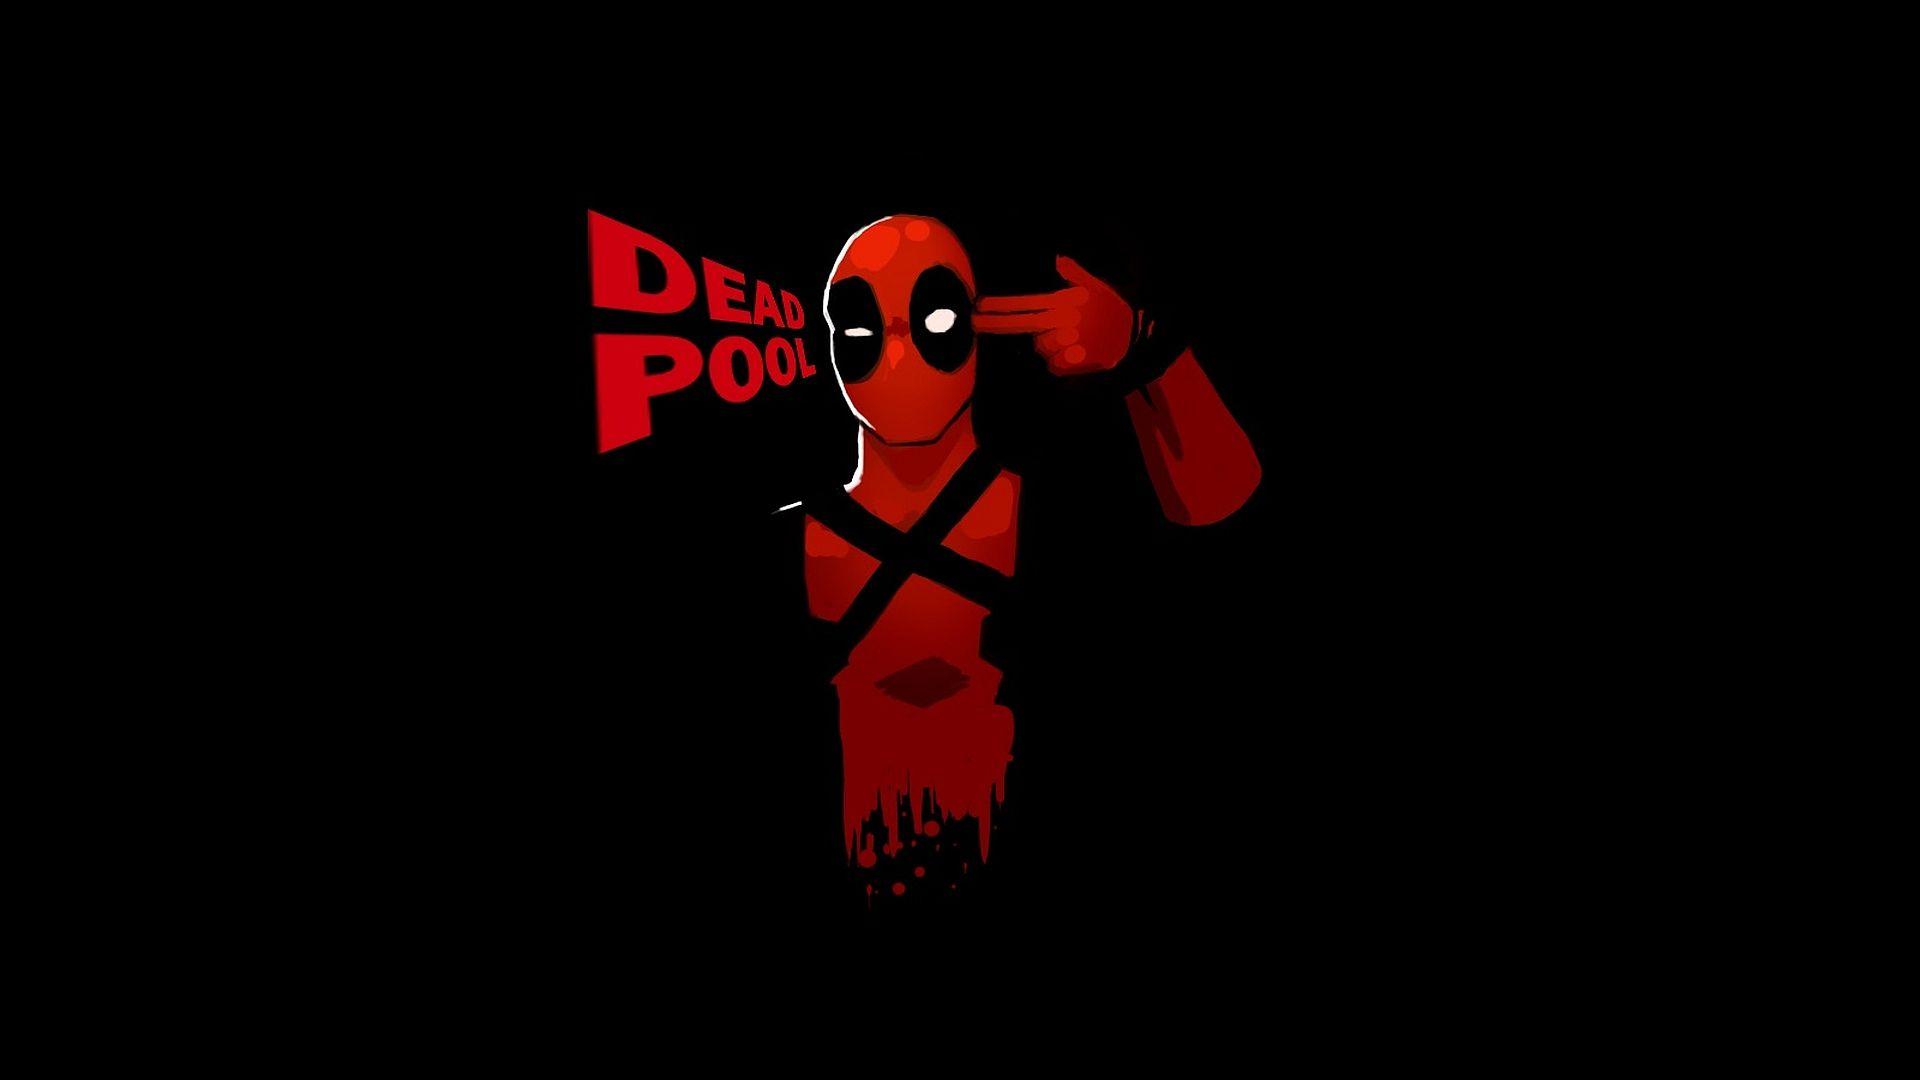 Download free Deadpool Wallpaper HD. Deadpool wallpaper, Deadpool logo wallpaper, Deadpool HD wallpaper